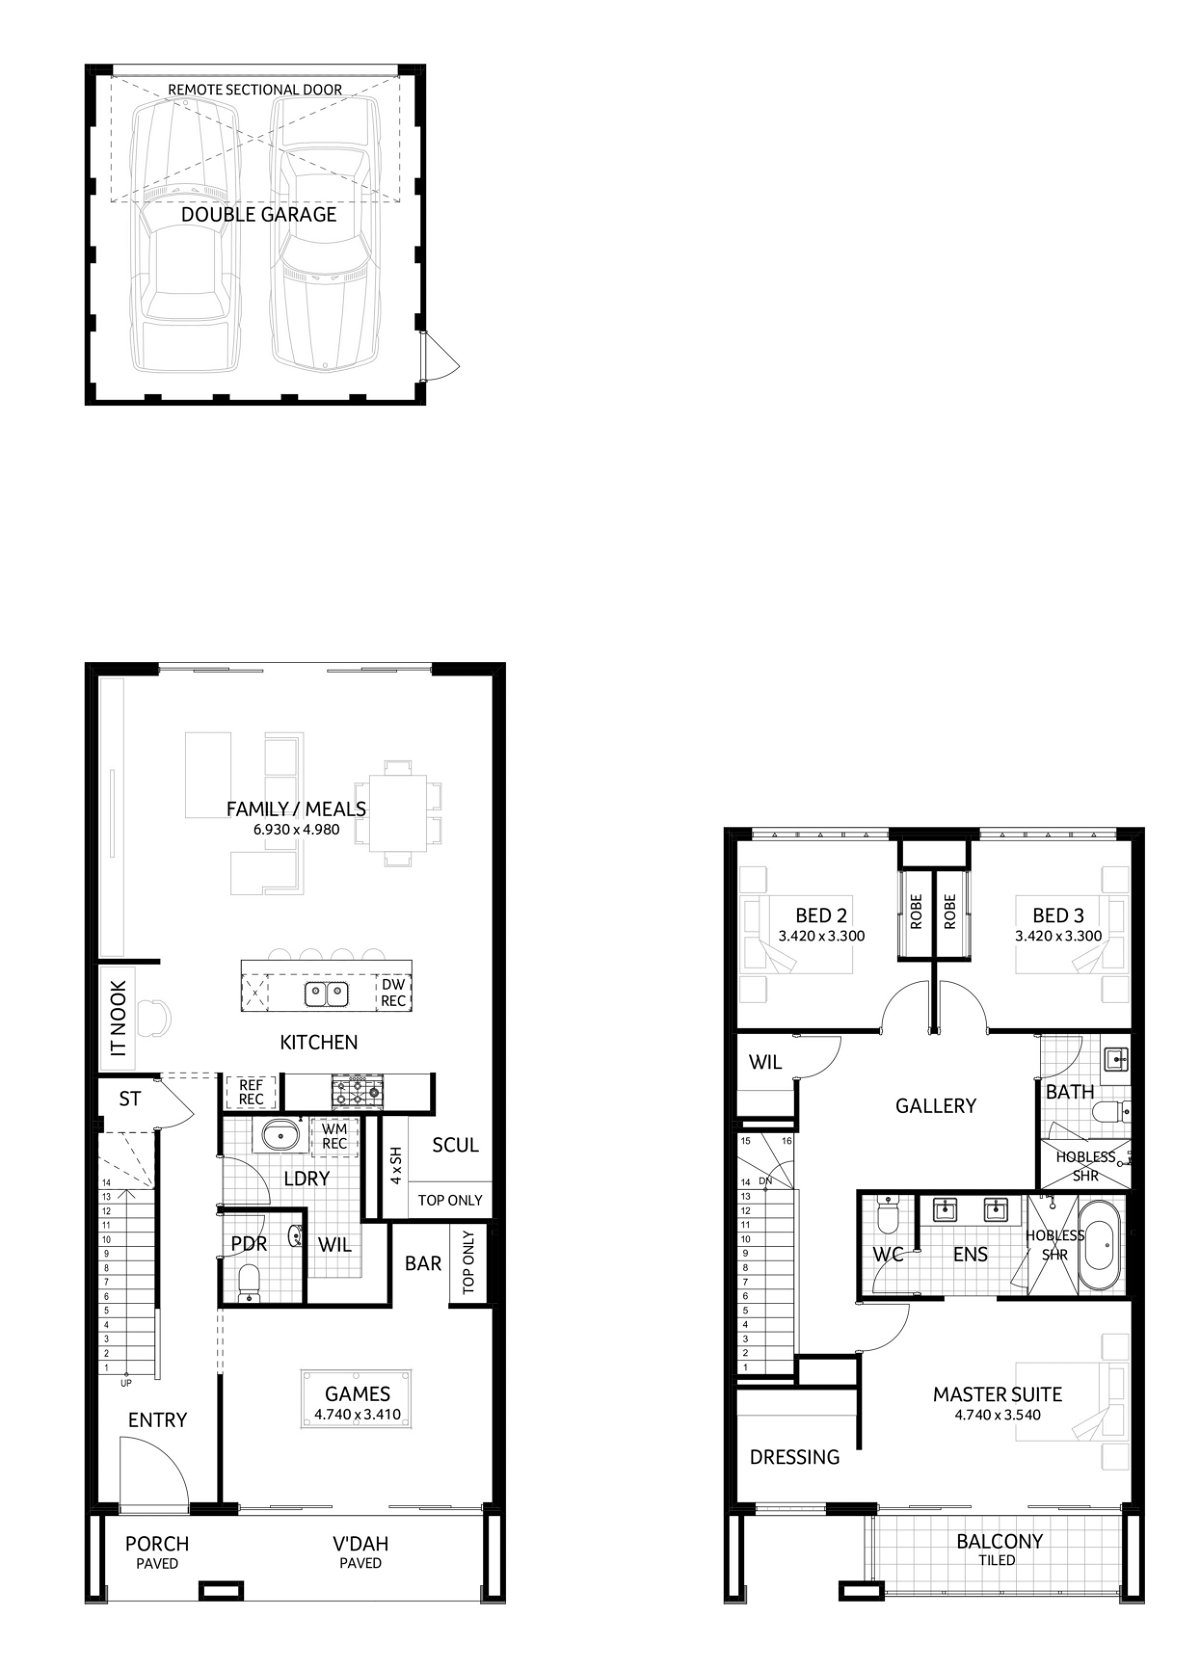 Plunkett Homes - Newcastle | Mid-Century - Floorplan - Newcastle Luxe Mid Century Marketing Plan A3Jpg